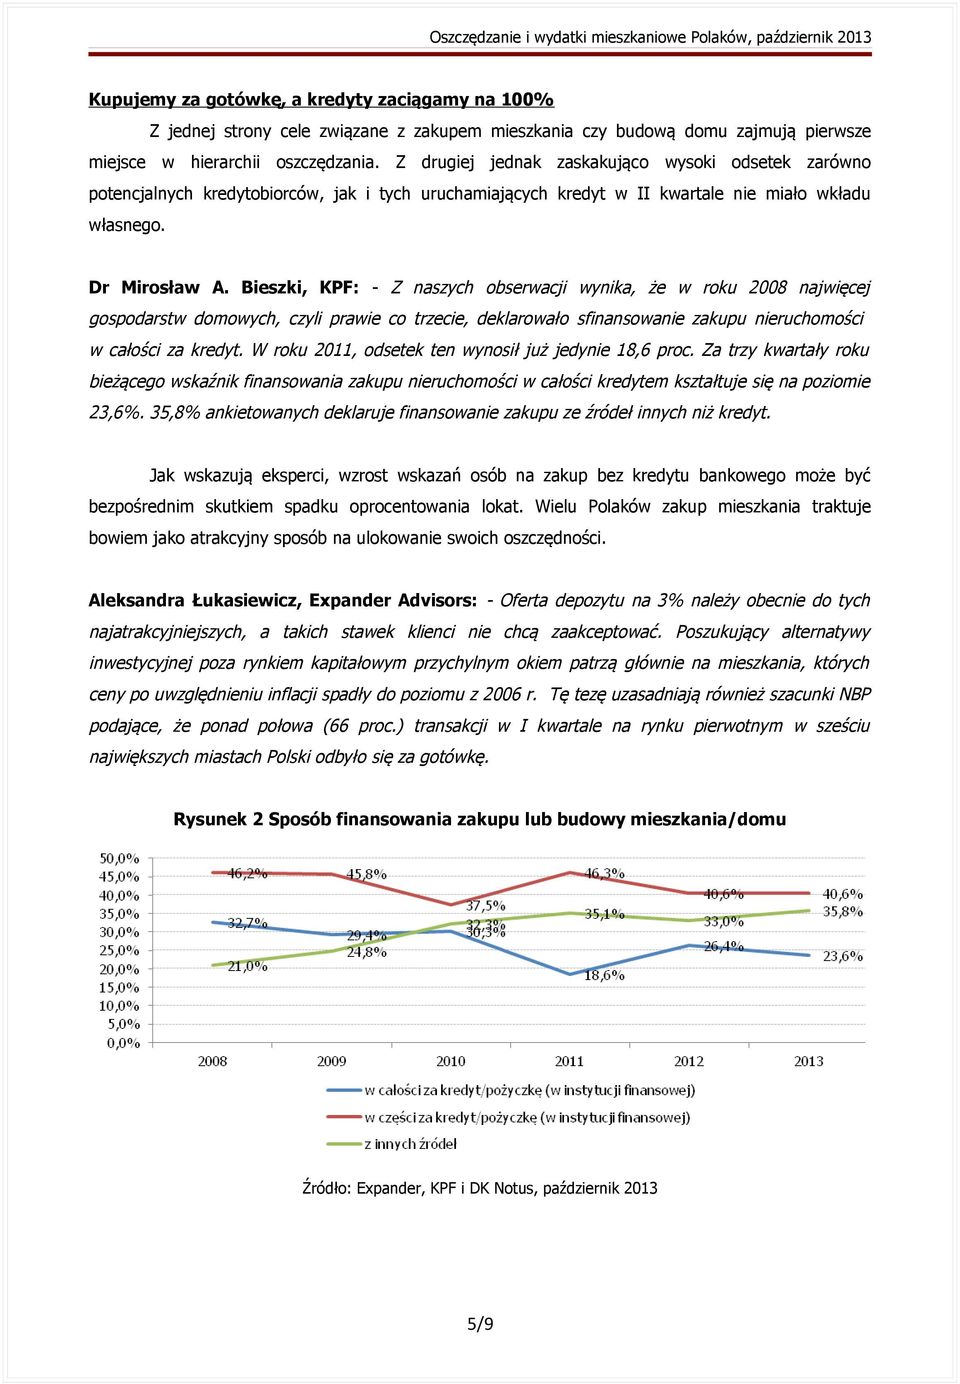 Bieszki, KPF: - Z naszych obserwacji wynika, że w roku 2008 najwięcej gospodarstw domowych, czyli prawie co trzecie, deklarowało sfinansowanie zakupu nieruchomości w całości za kredyt.